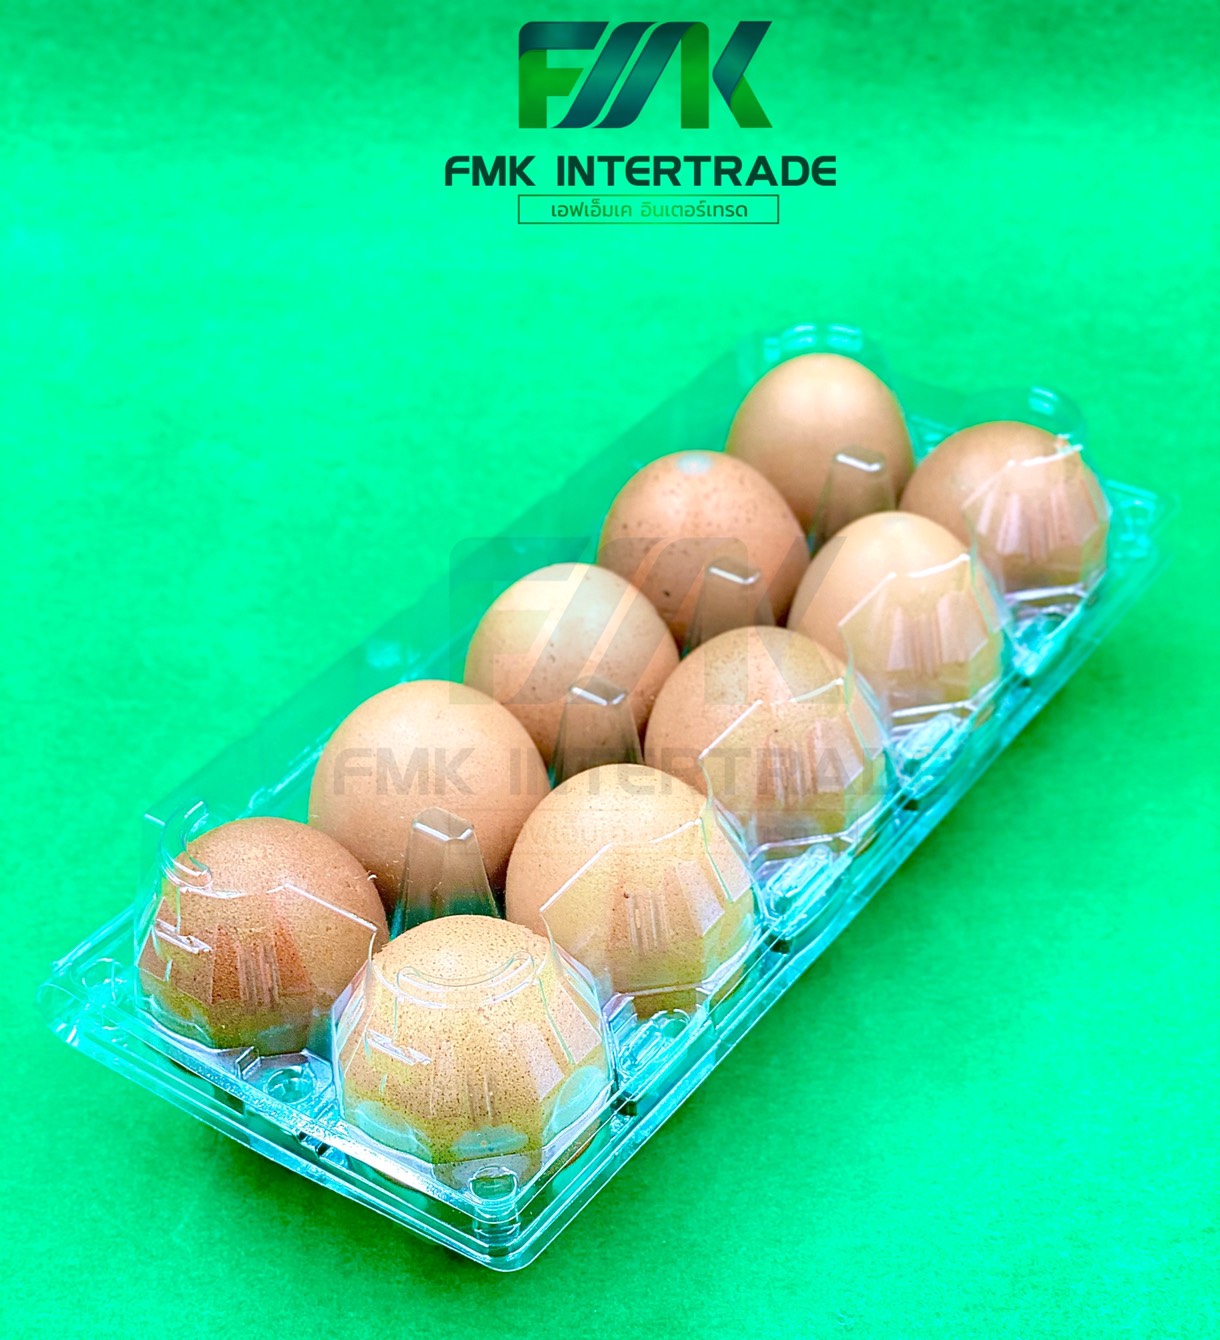 กล่องใส่ไข่ แบบใส 10 ฟอง เบอร์ L ใส่ไข่เบอร์ 2-3-4 มีปุ่มล็อคในตัว จำนวน 100 ชิ้น